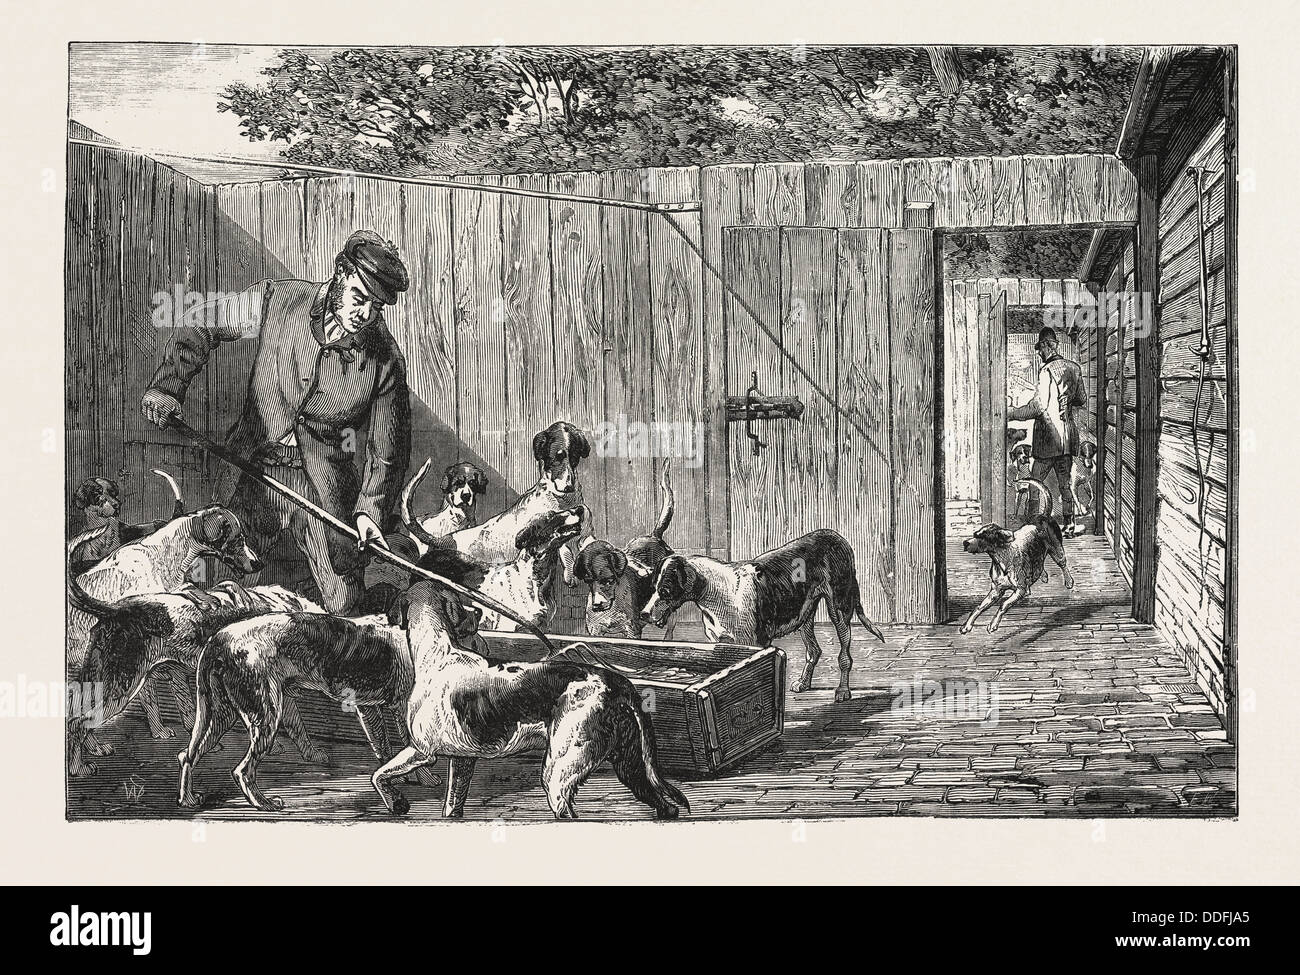 La caccia alla volpe, il momento della colazione al canile, caccia, incisione 1876, Regno Unito, Gran Bretagna British, Europa, Regno Unito, Gran Bretagna Foto Stock